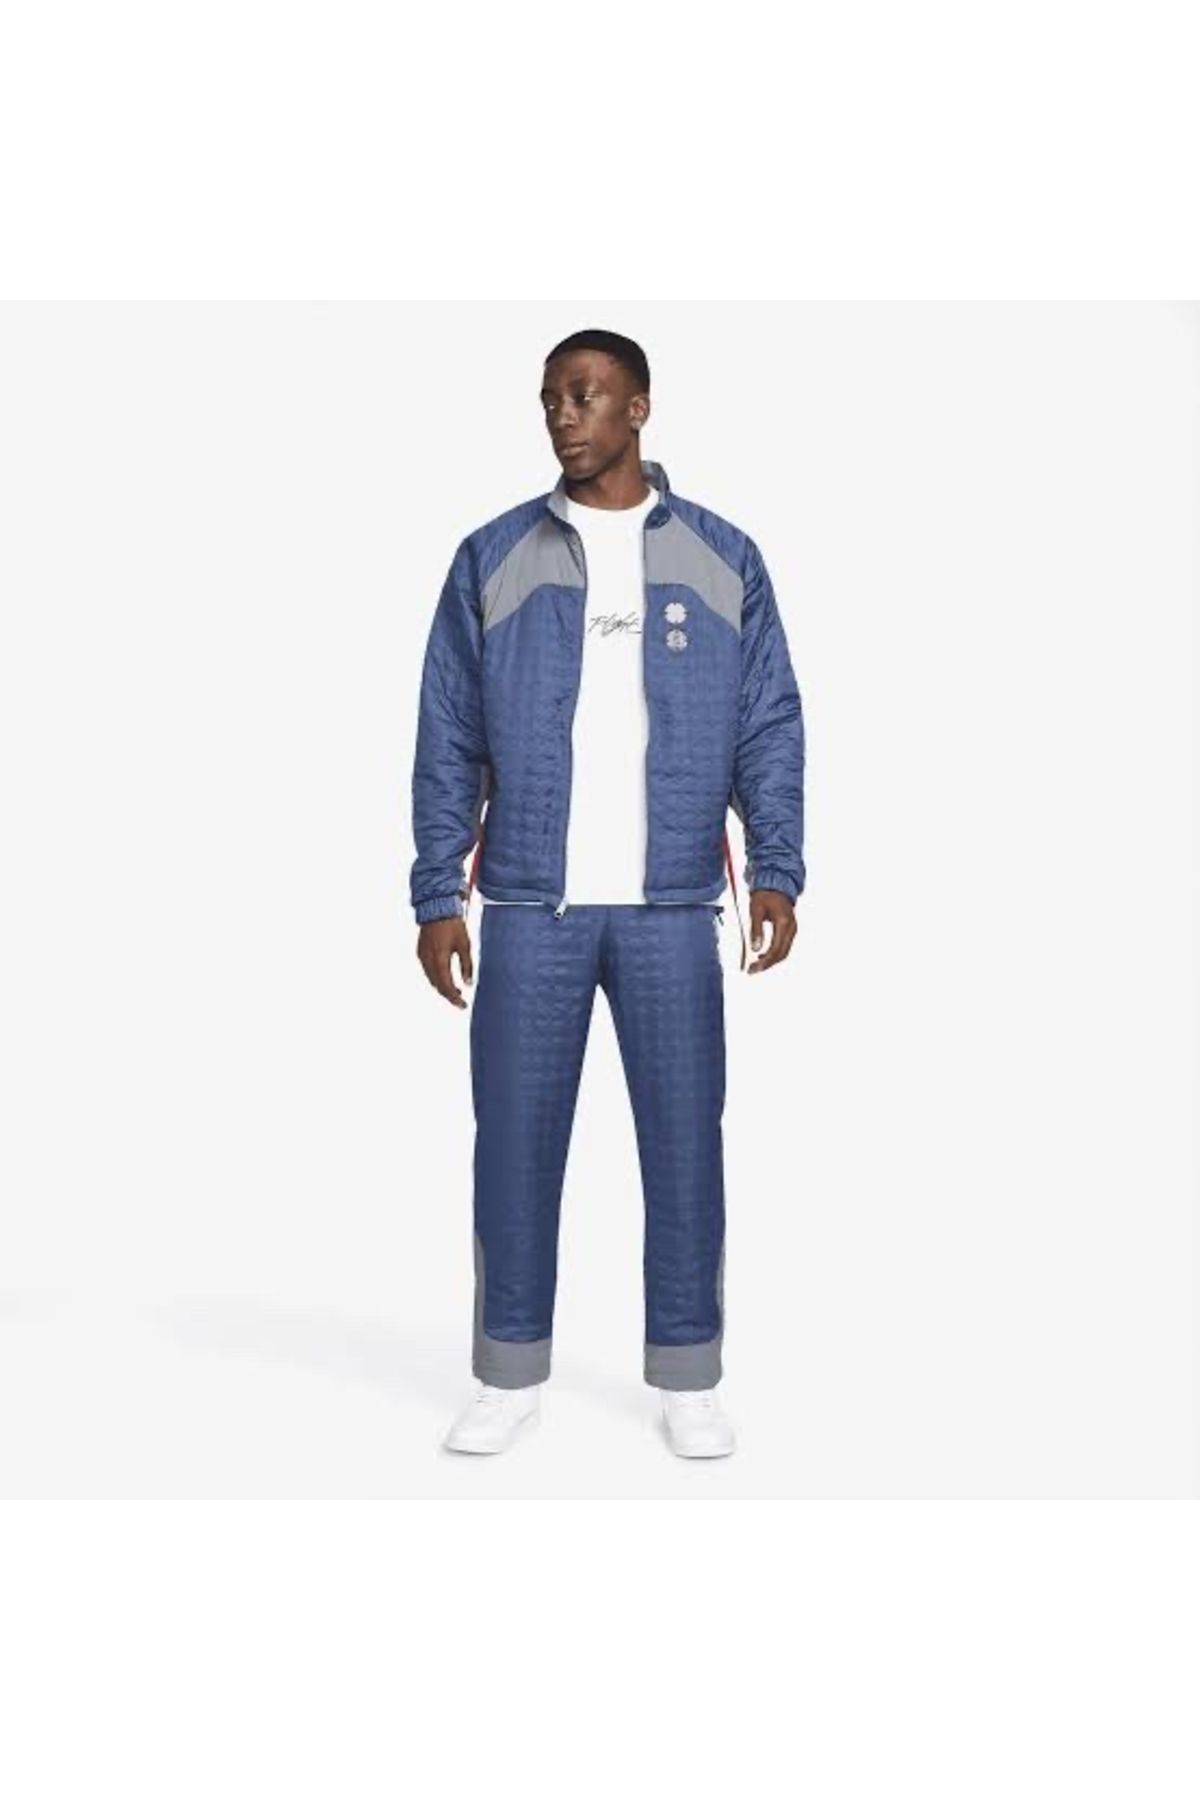 Nike Jordan x CLOT Jacket Navy